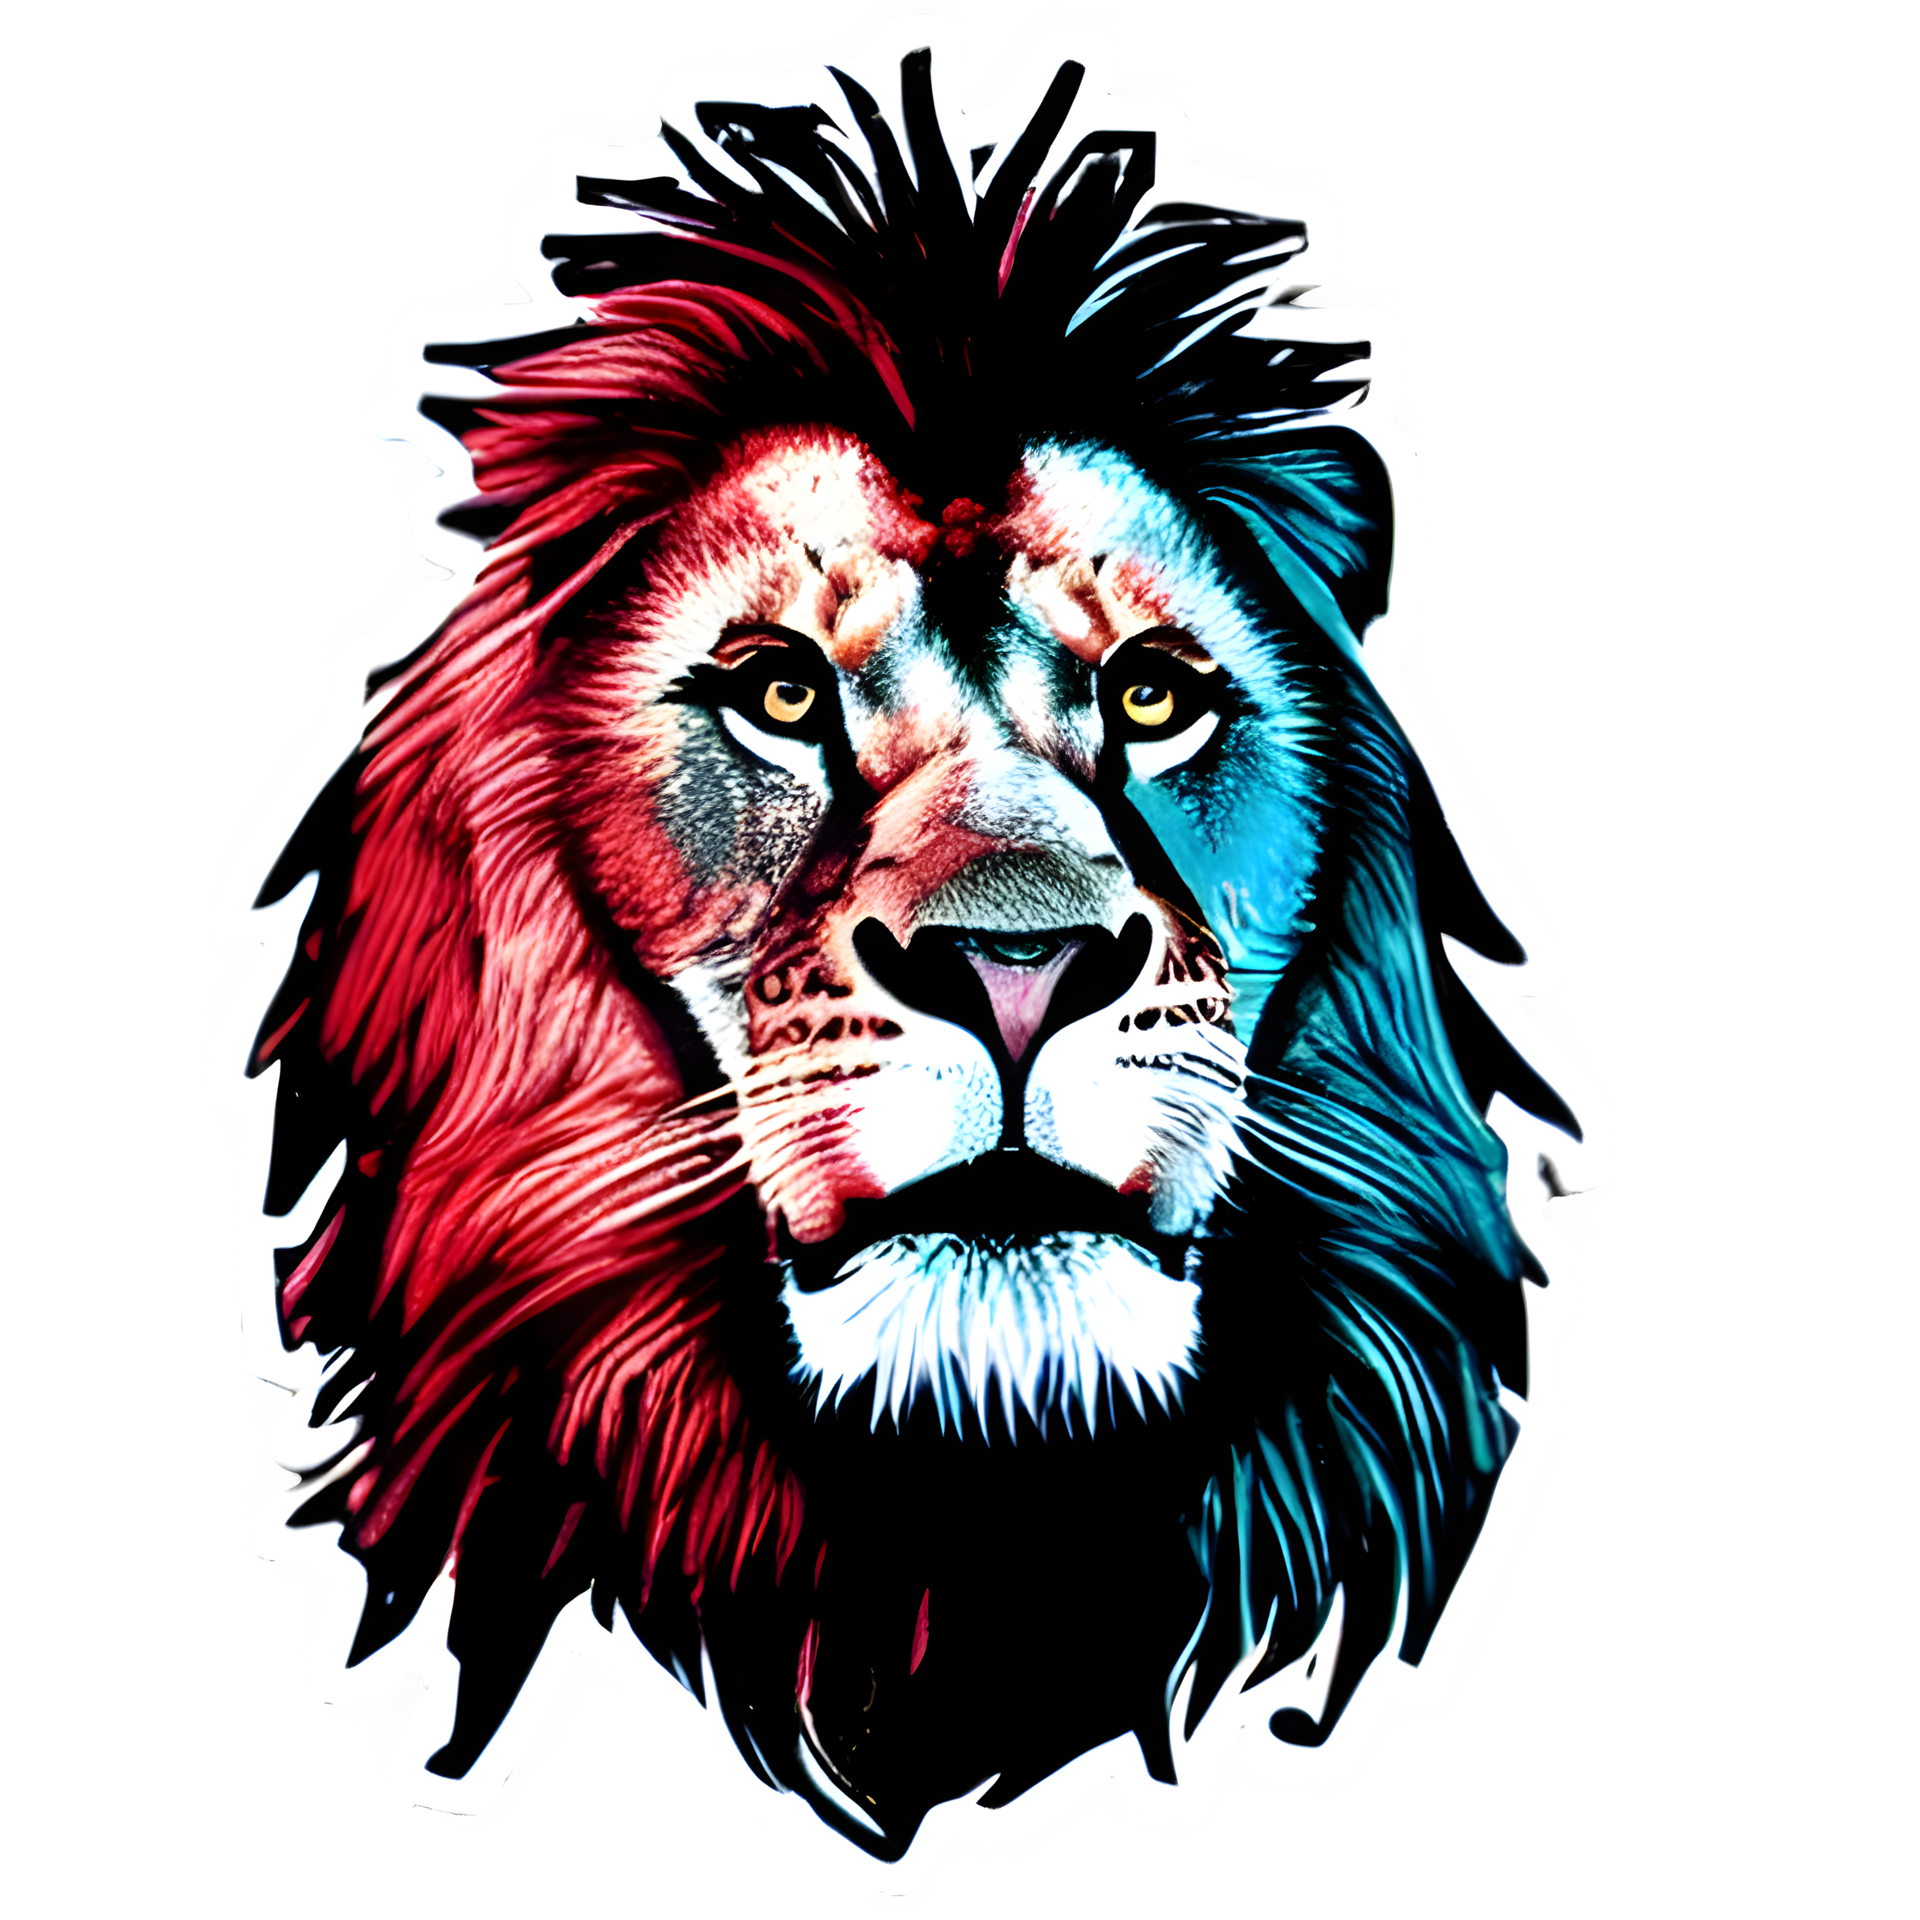 Logo đầu sư tử đầy màu sắc miễn phí sẽ đem lại cho bạn nhiều cảm hứng và sự sáng tạo. Với các thiết kế pop hiện đại và nghệ thuật, bạn sẽ tìm thấy những logo đẹp và thu hút, phù hợp với nhiều mục đích sử dụng khác nhau. Khám phá bộ sưu tập logo đầu sư tử của chúng tôi và tạo dấu ấn cho thương hiệu của bạn!